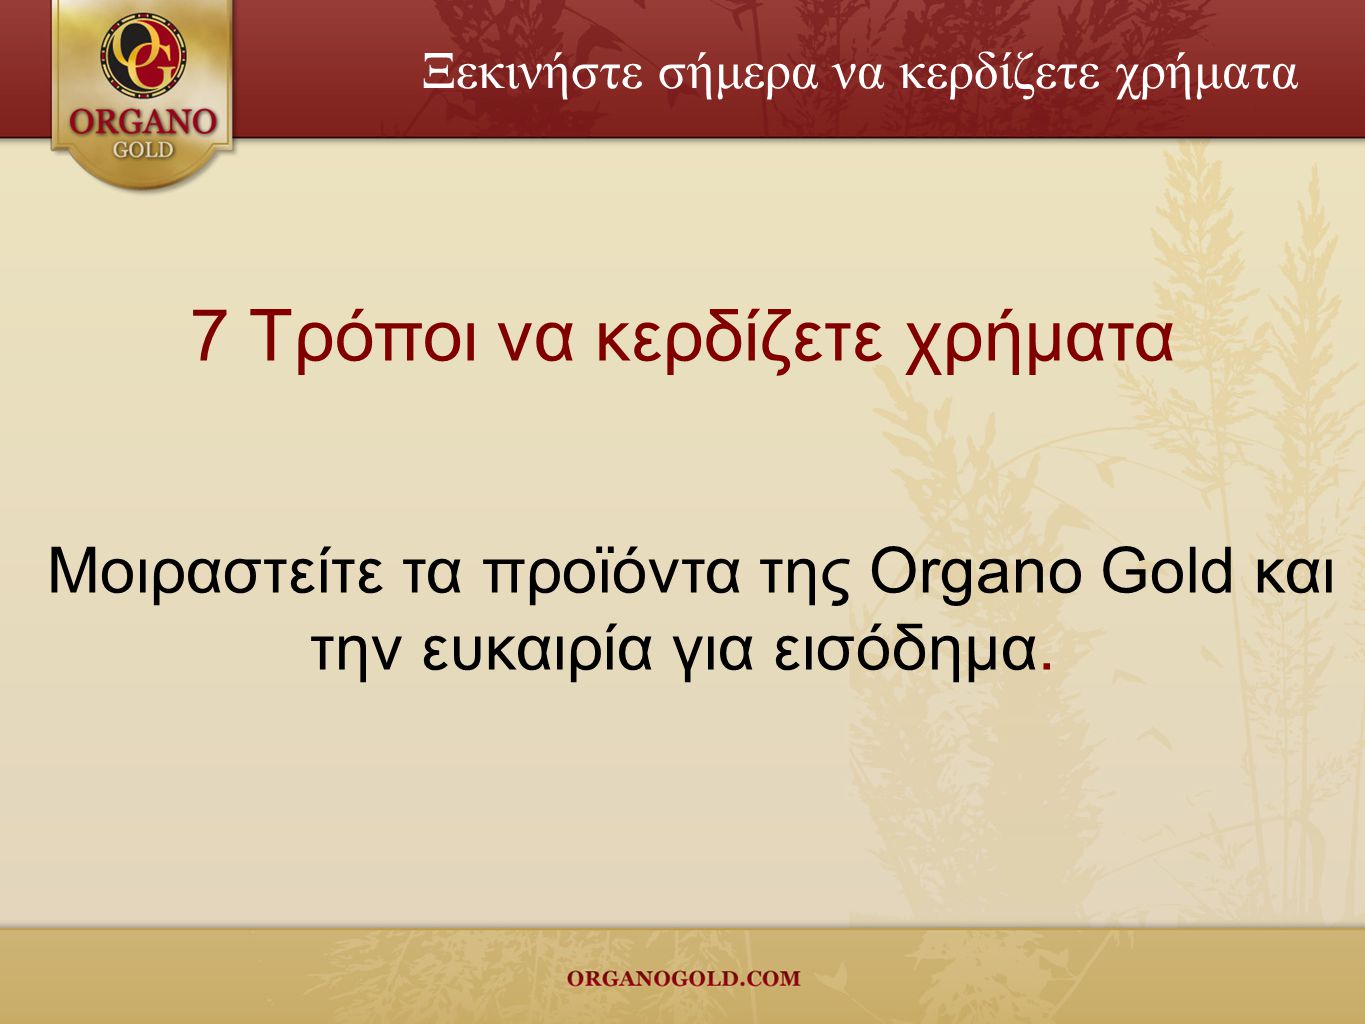 7 Τρόποι να κερδίζετε χρήματα Μοιραστείτε τα προϊόντα της Organo Gold και την ευκαιρία για εισόδημα.